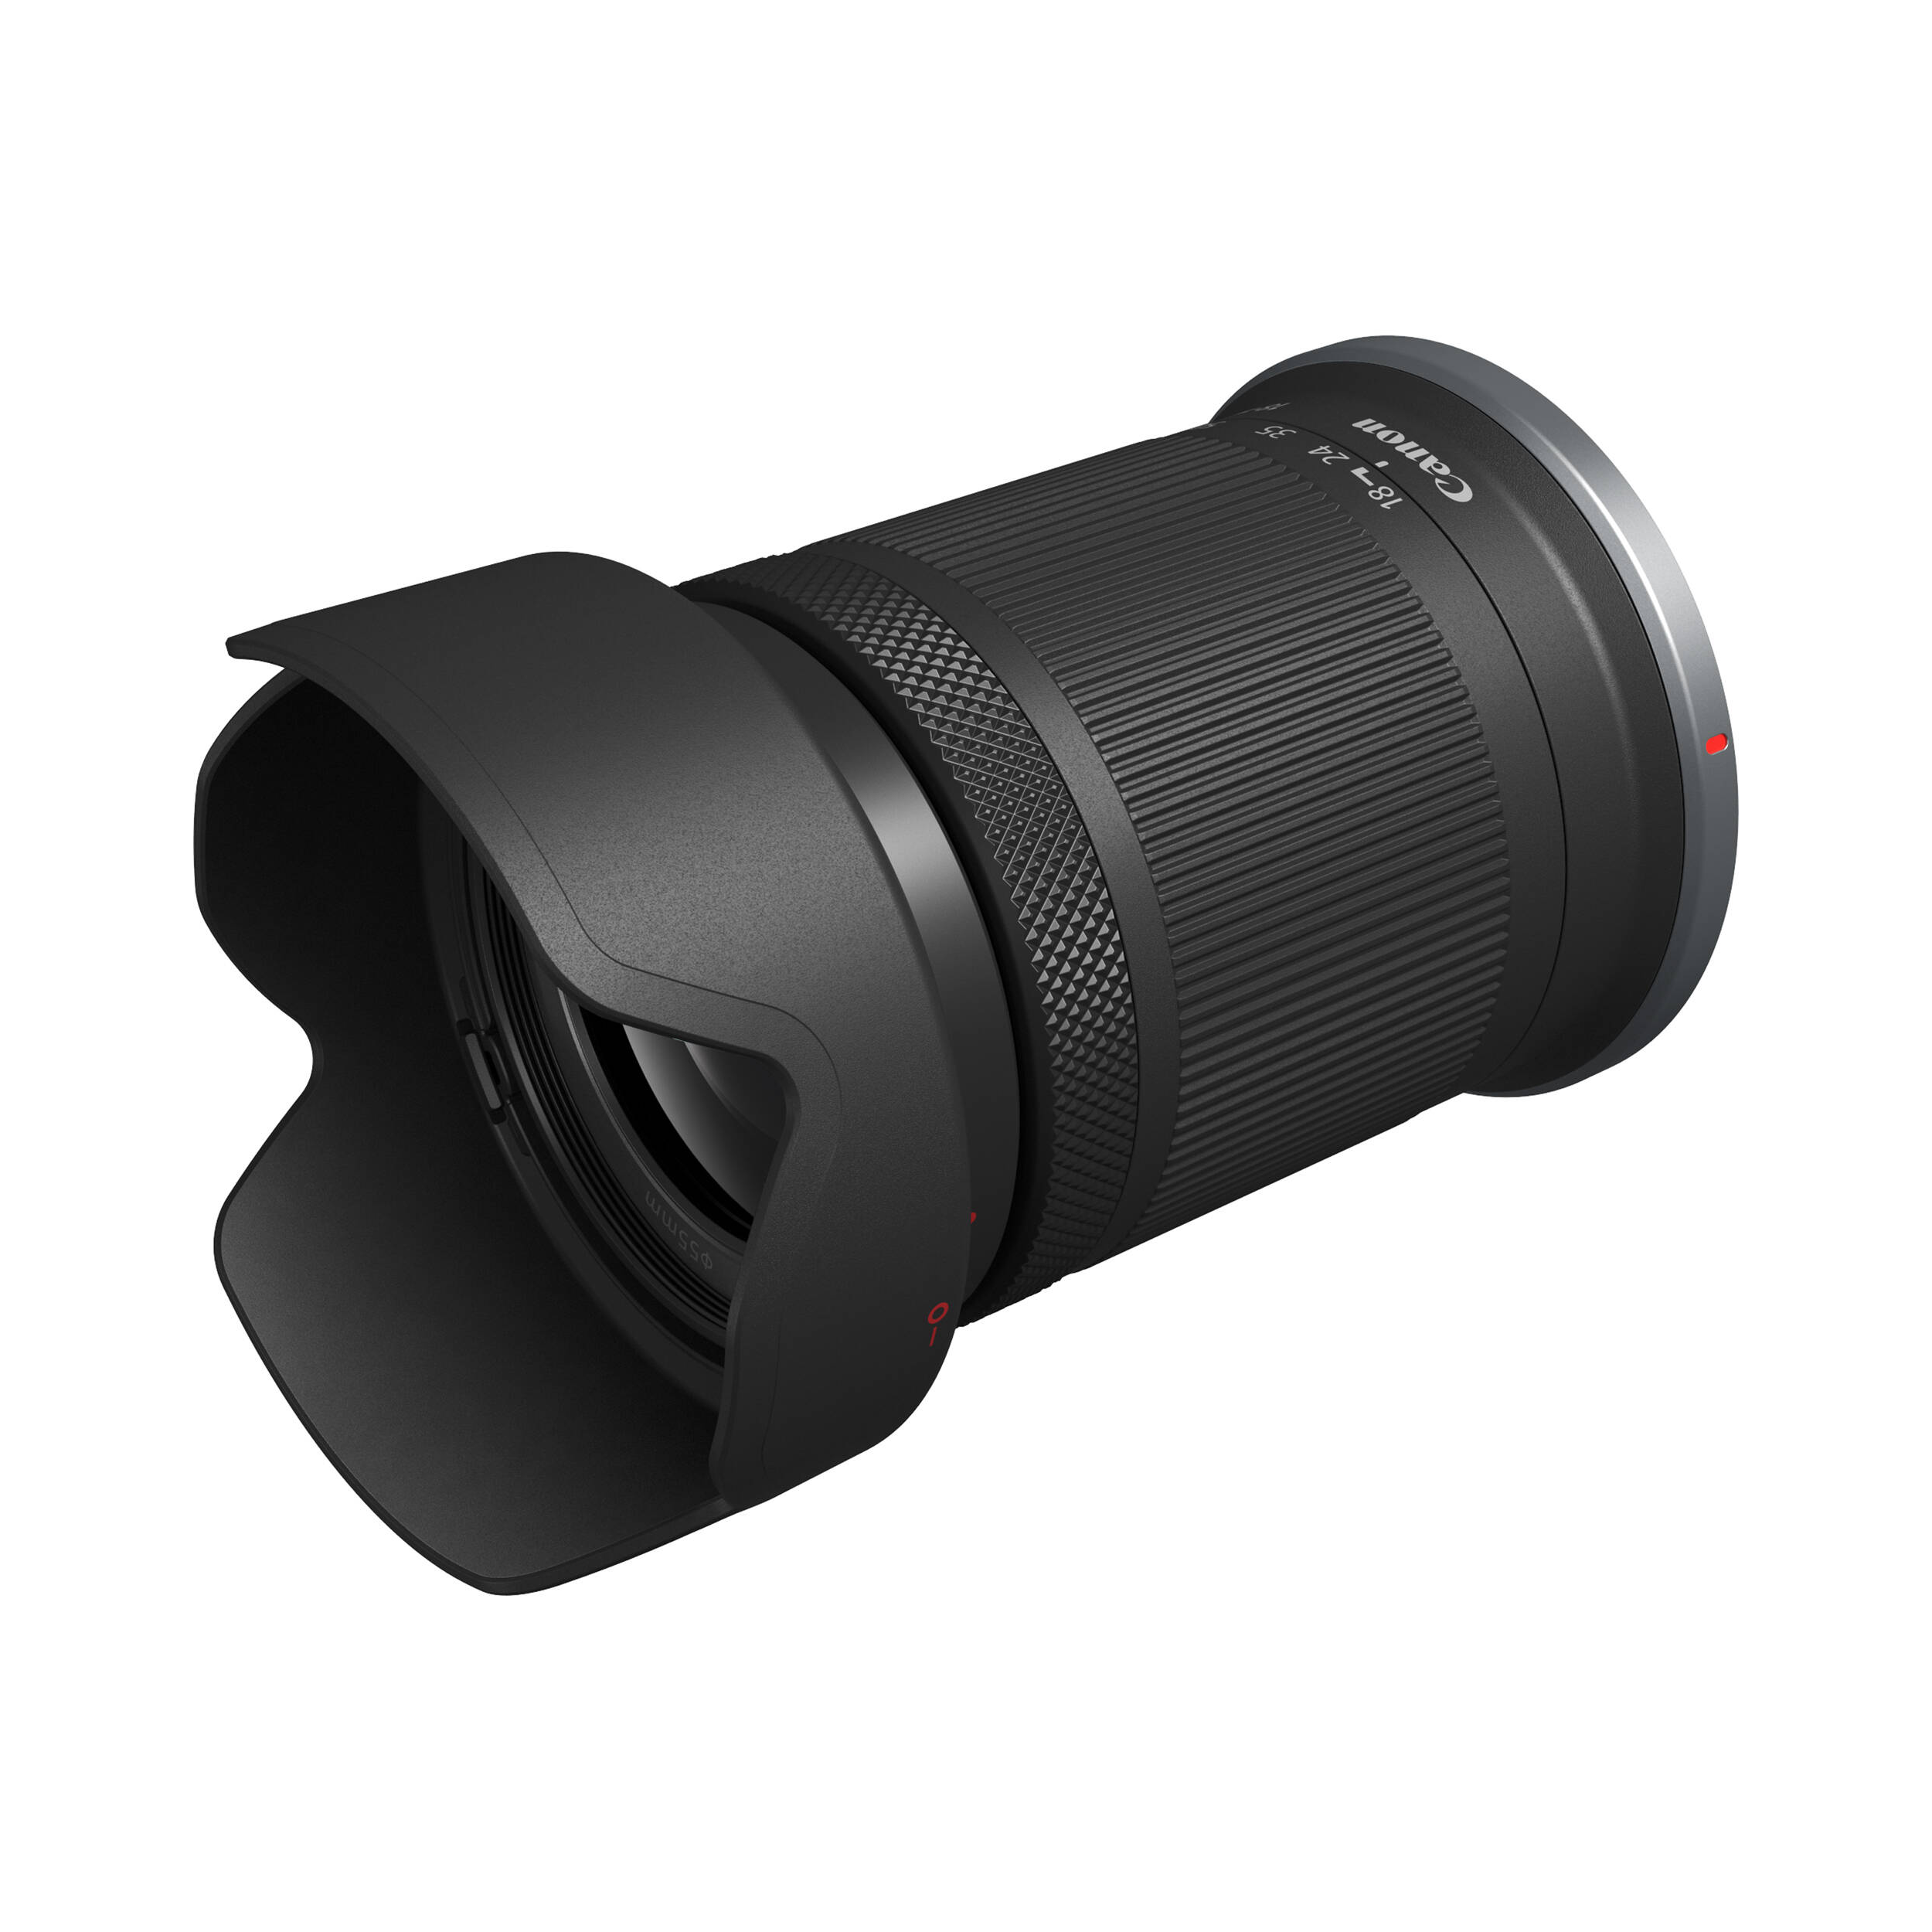 Caméra sans miroir Canon EOS R7 avec kit d'objectif 18-150 mm